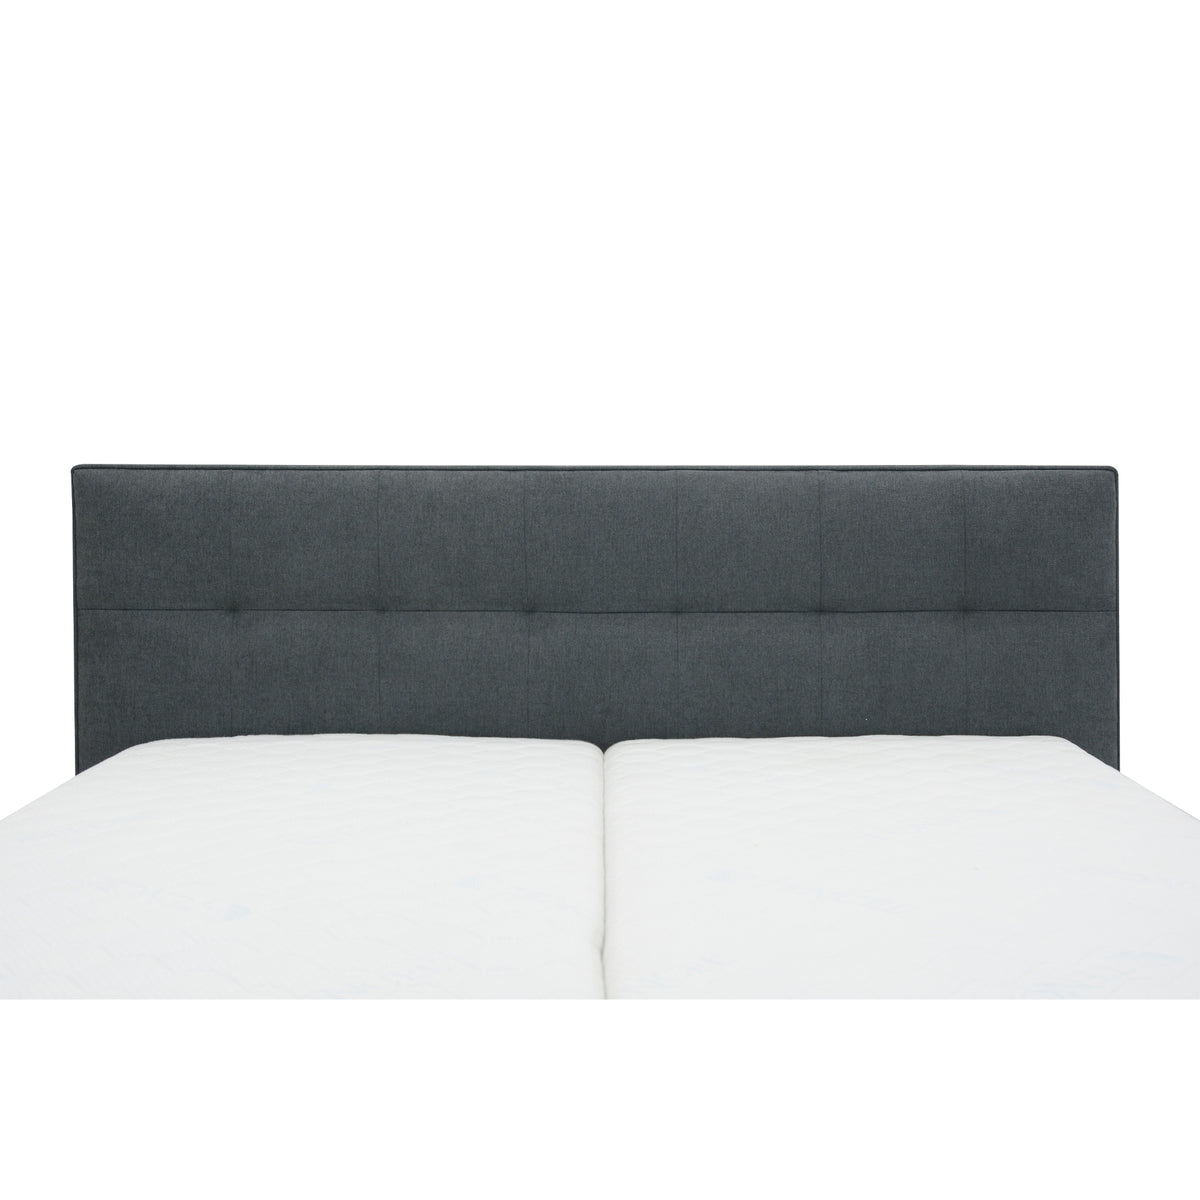 Čalouněná postel Trend 180x200, šedá, vč. matrace, boční výklop